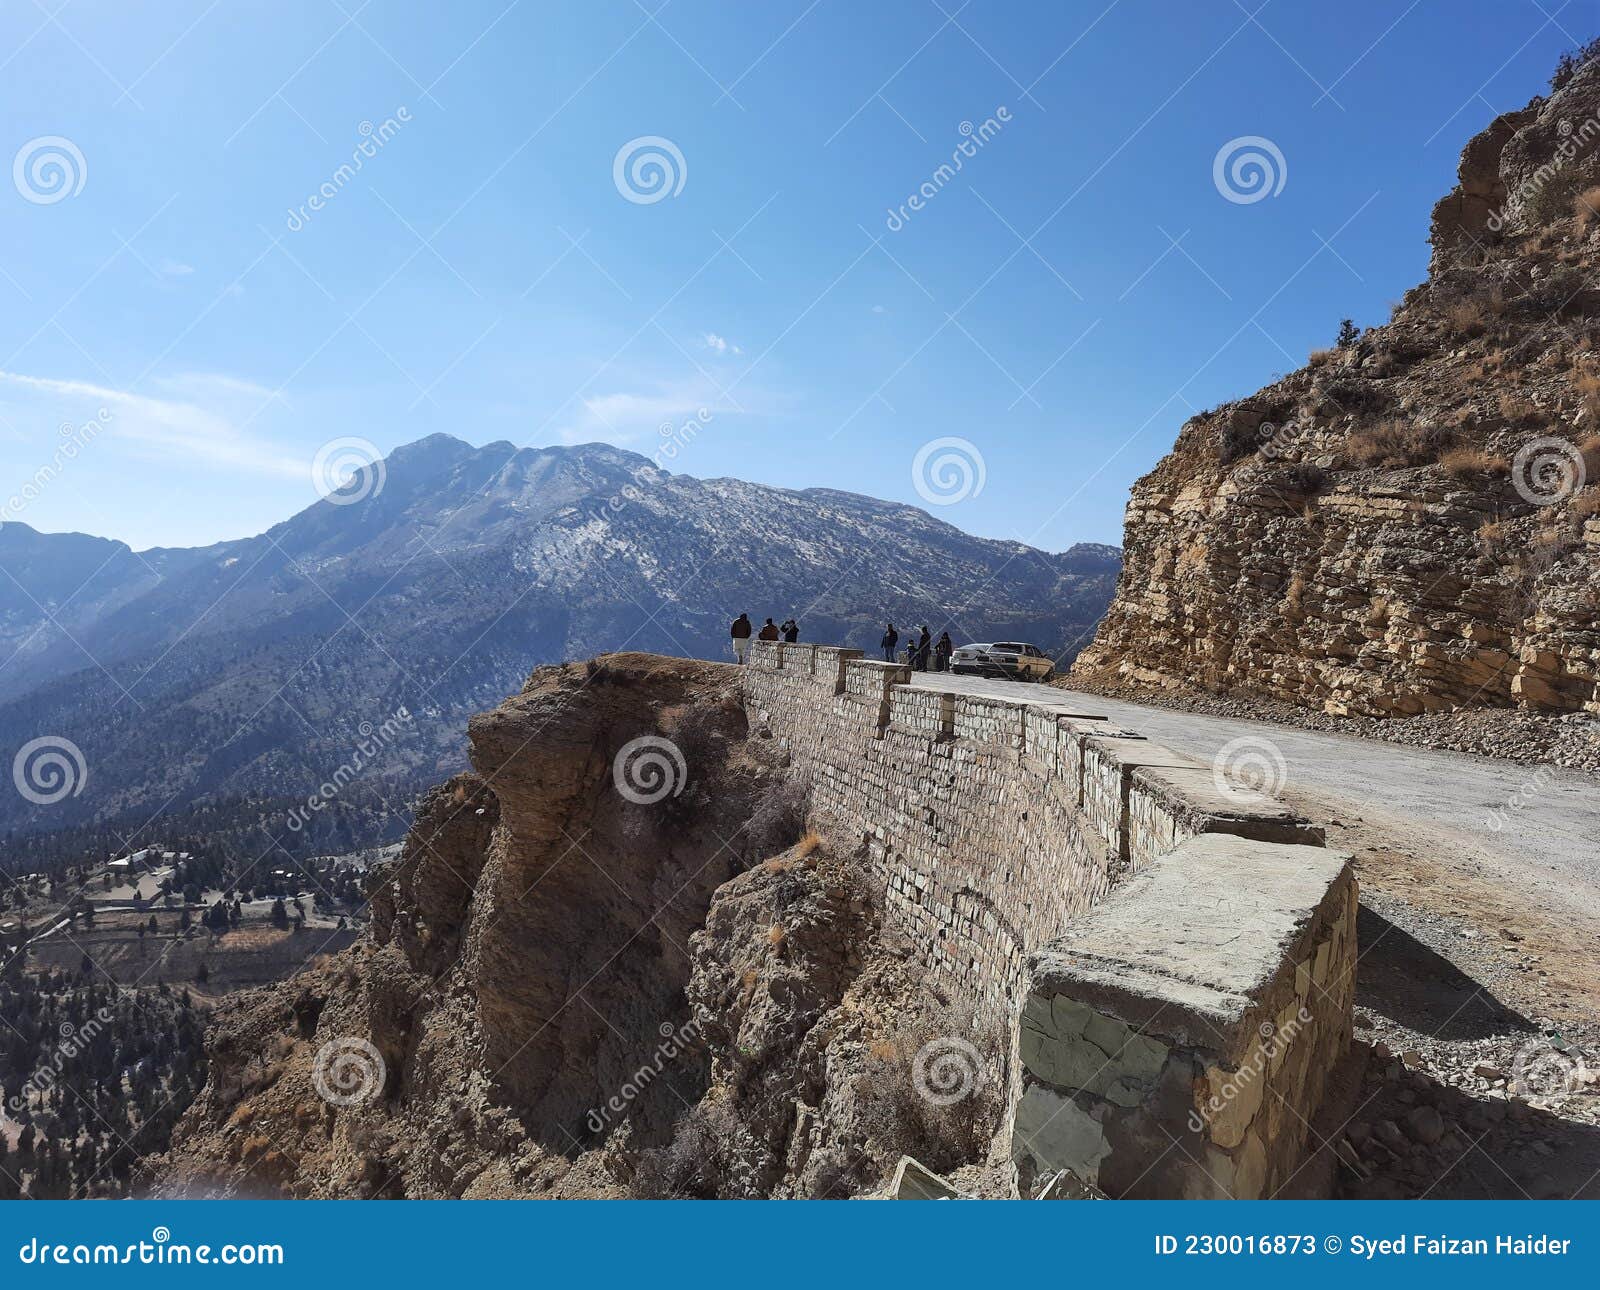 beauty of rocky mountain in quetta